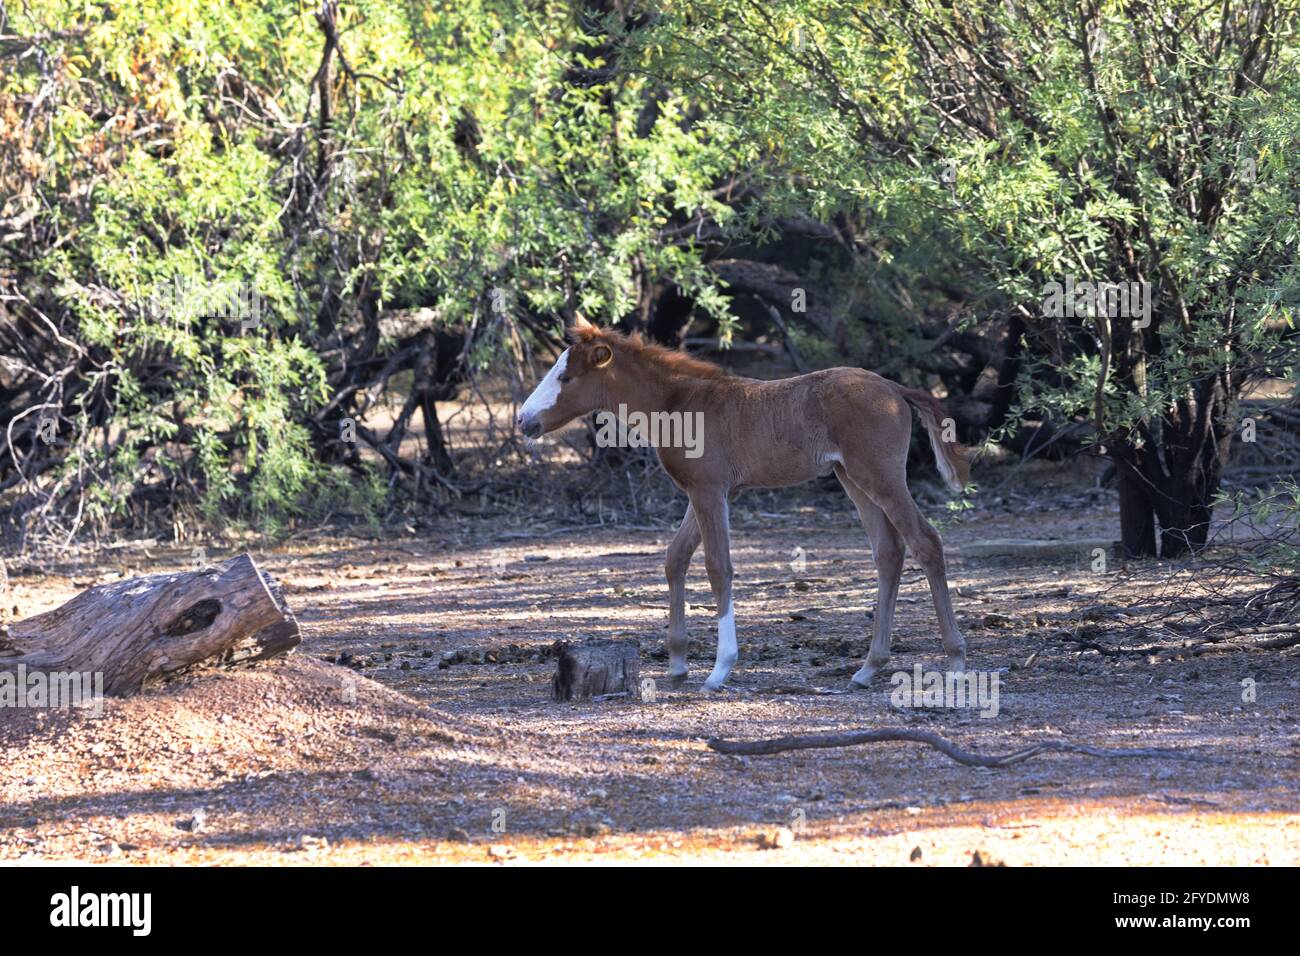 El caballo salvaje del bebé, miembro joven de la manada de Salt River, camina a la sombra entre los árboles mezquite del Bosque Nacional Tonto en Arizona. Foto de stock